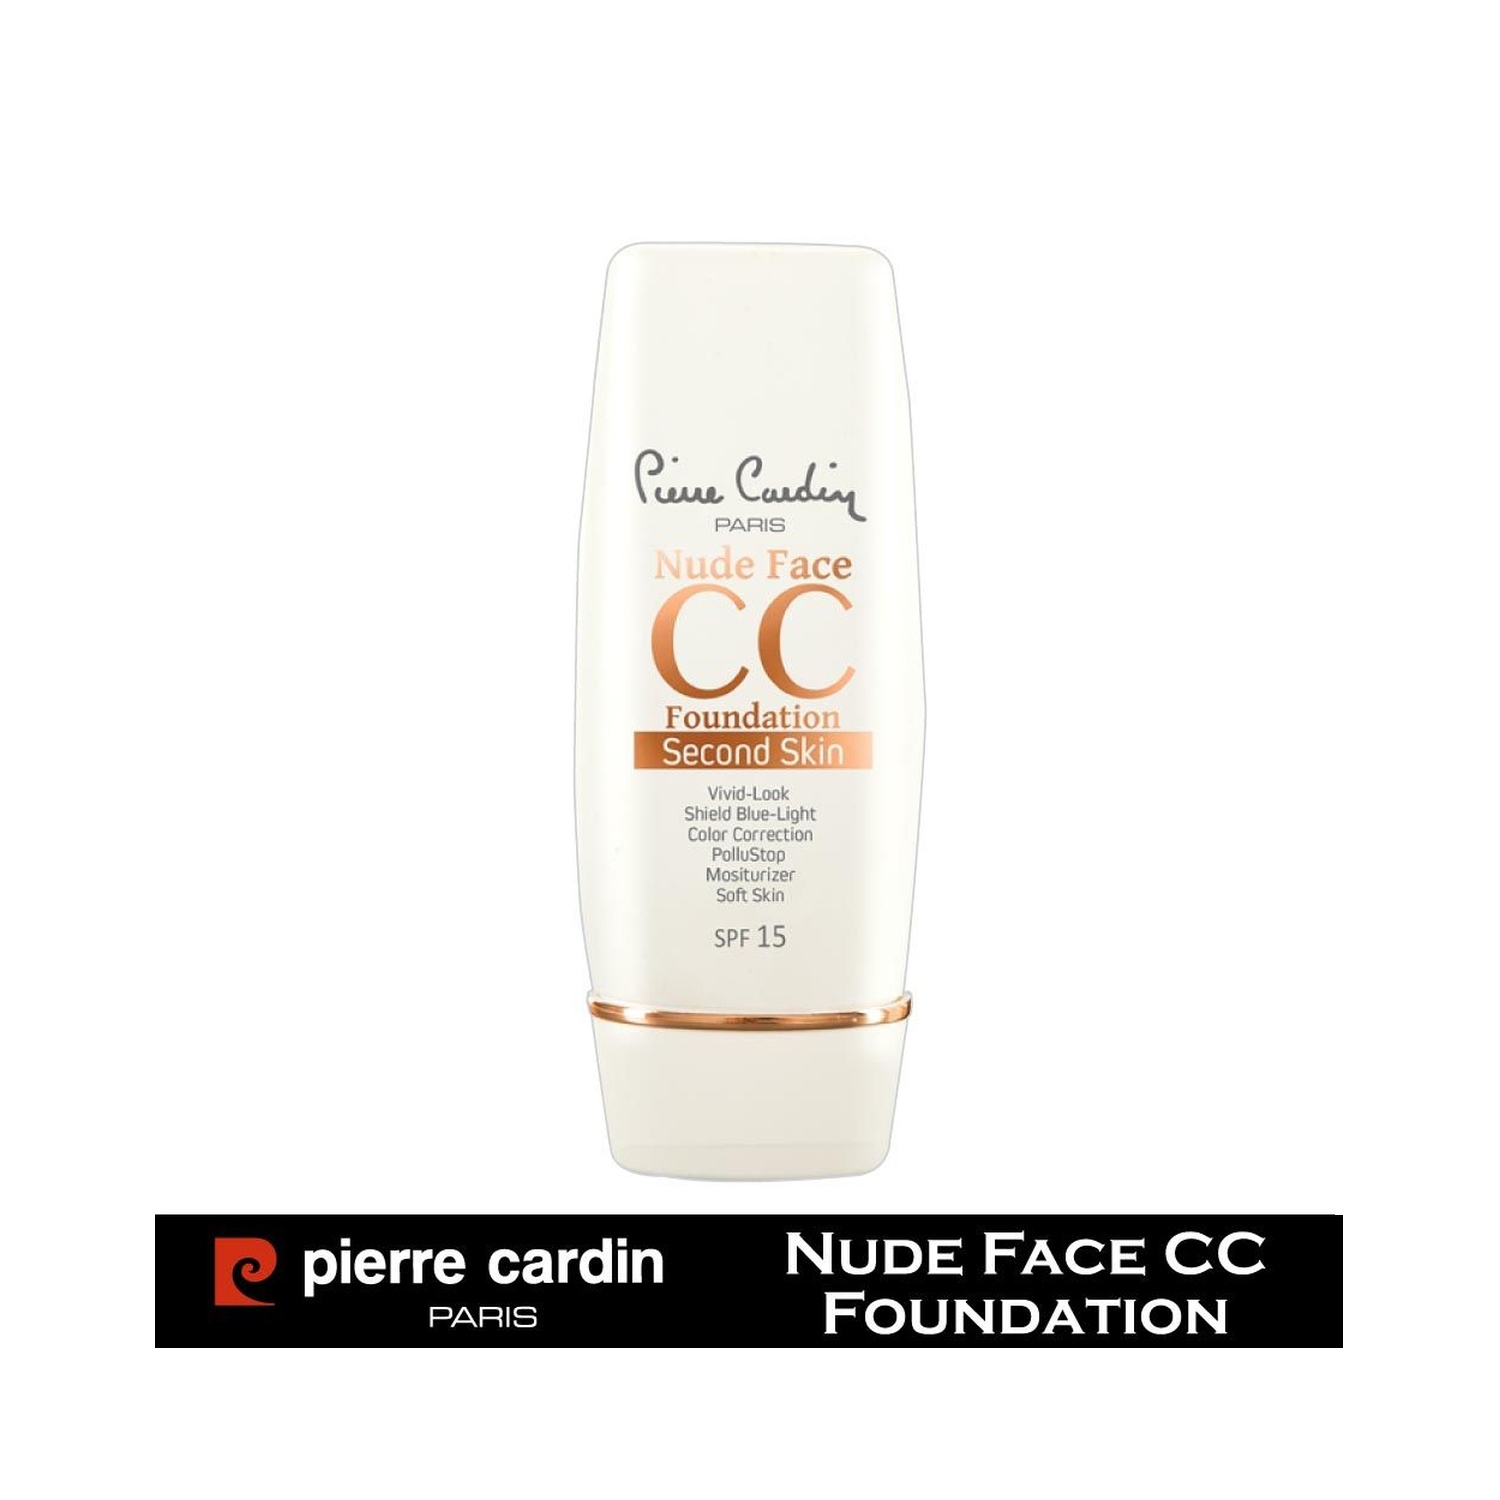 Pierre Cardin Paris Second Skin Nude Face CC Foundation - 670 Medium (30ml)